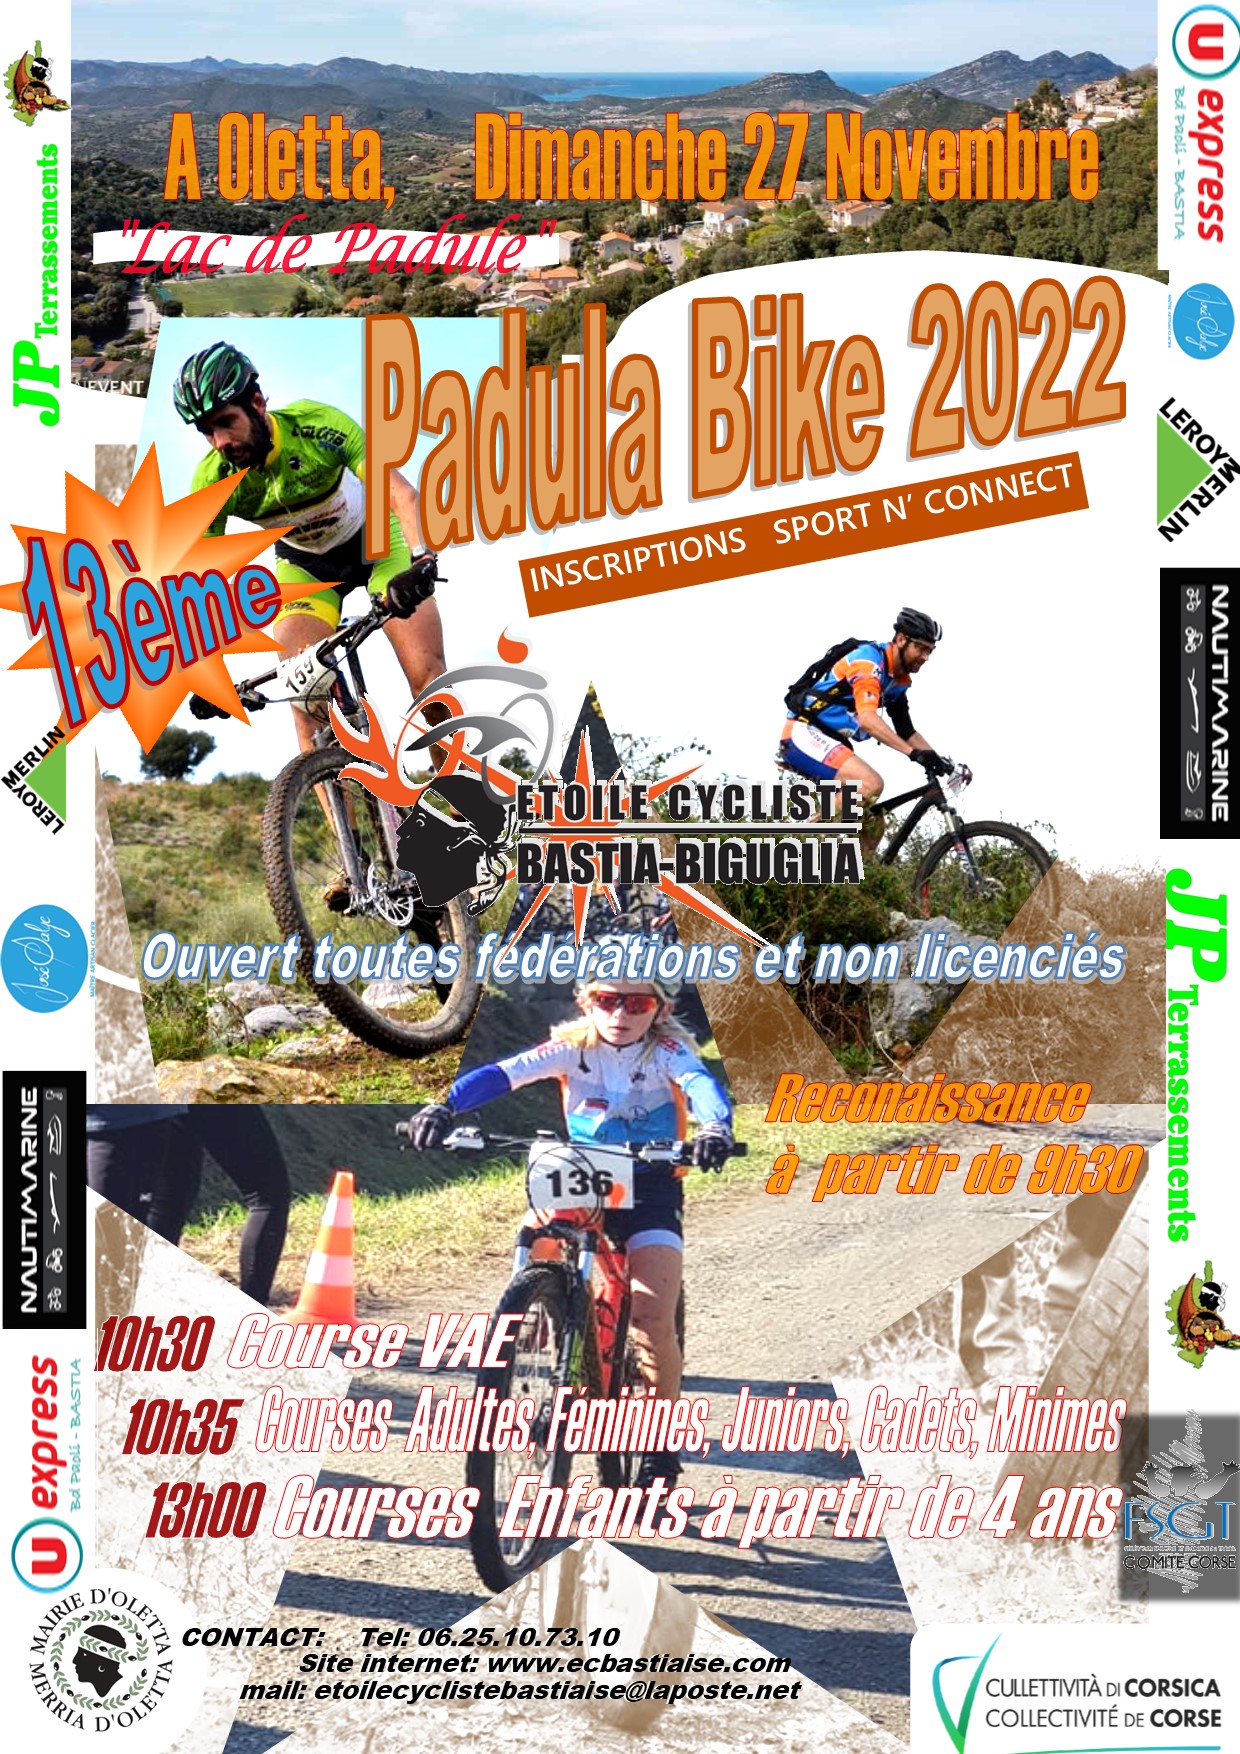 Cyclisme : la 13ème édition de la Padula Bike ce dimanche à Oletta